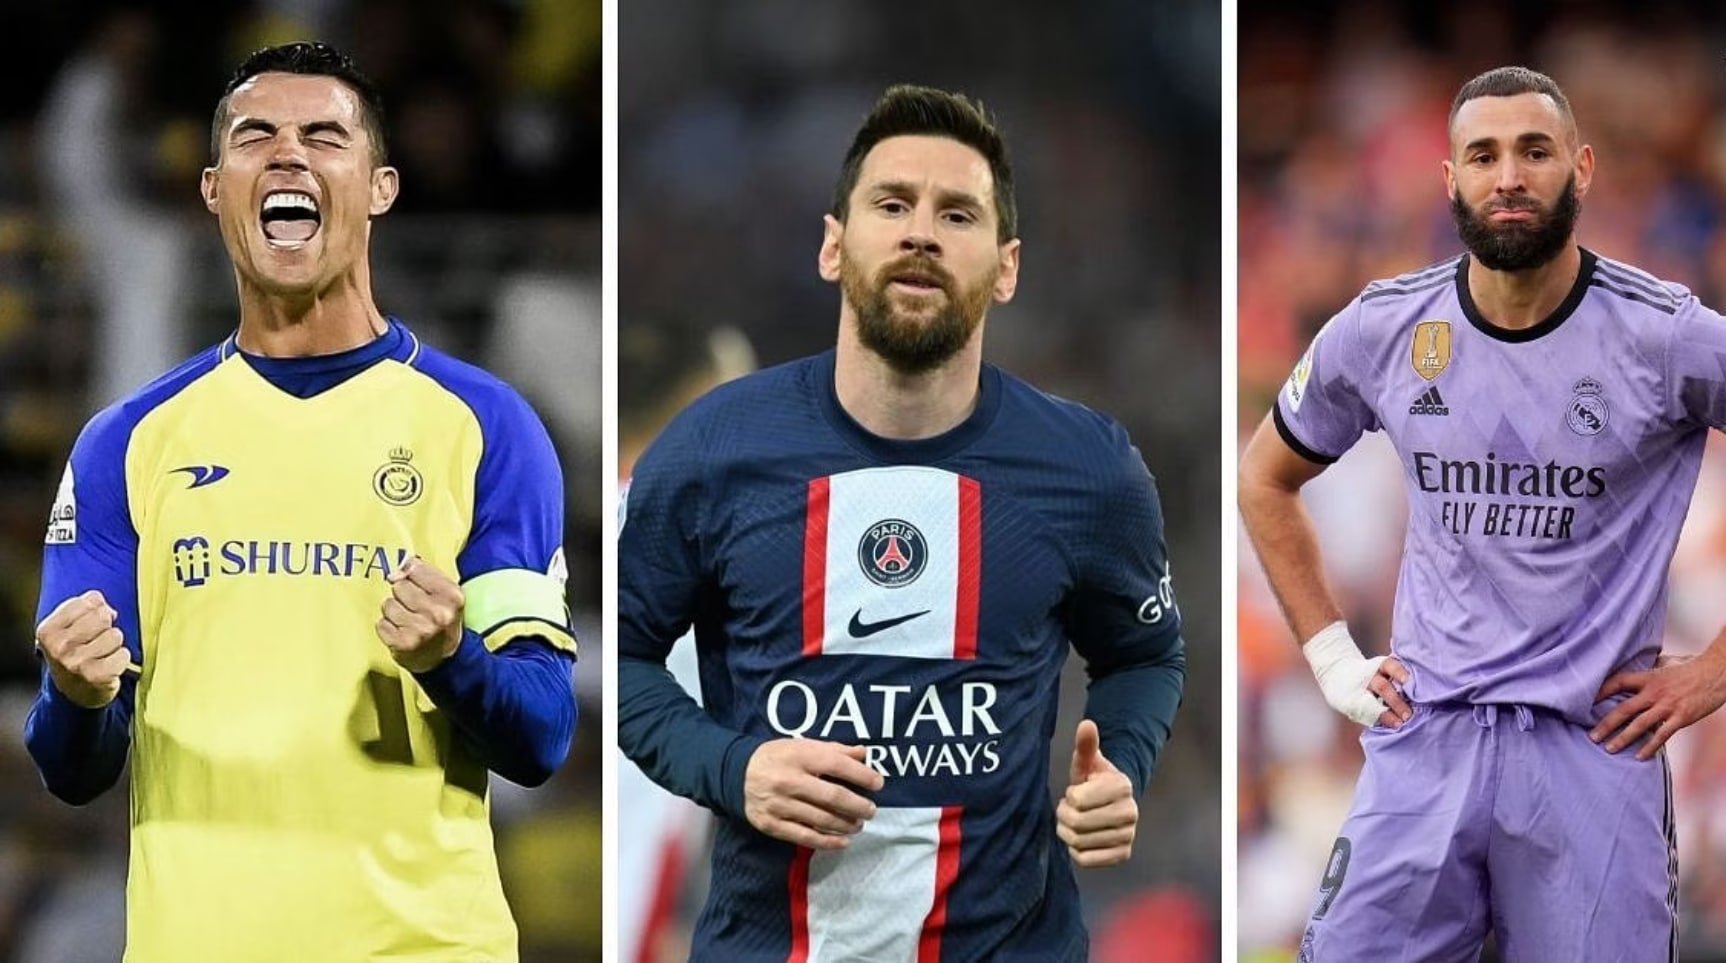 Les propriétaires de Newcastle pourraient travailler avec Ronaldo, Messi et Benzema en acquérant des participations dans 4 clubs saoudiens